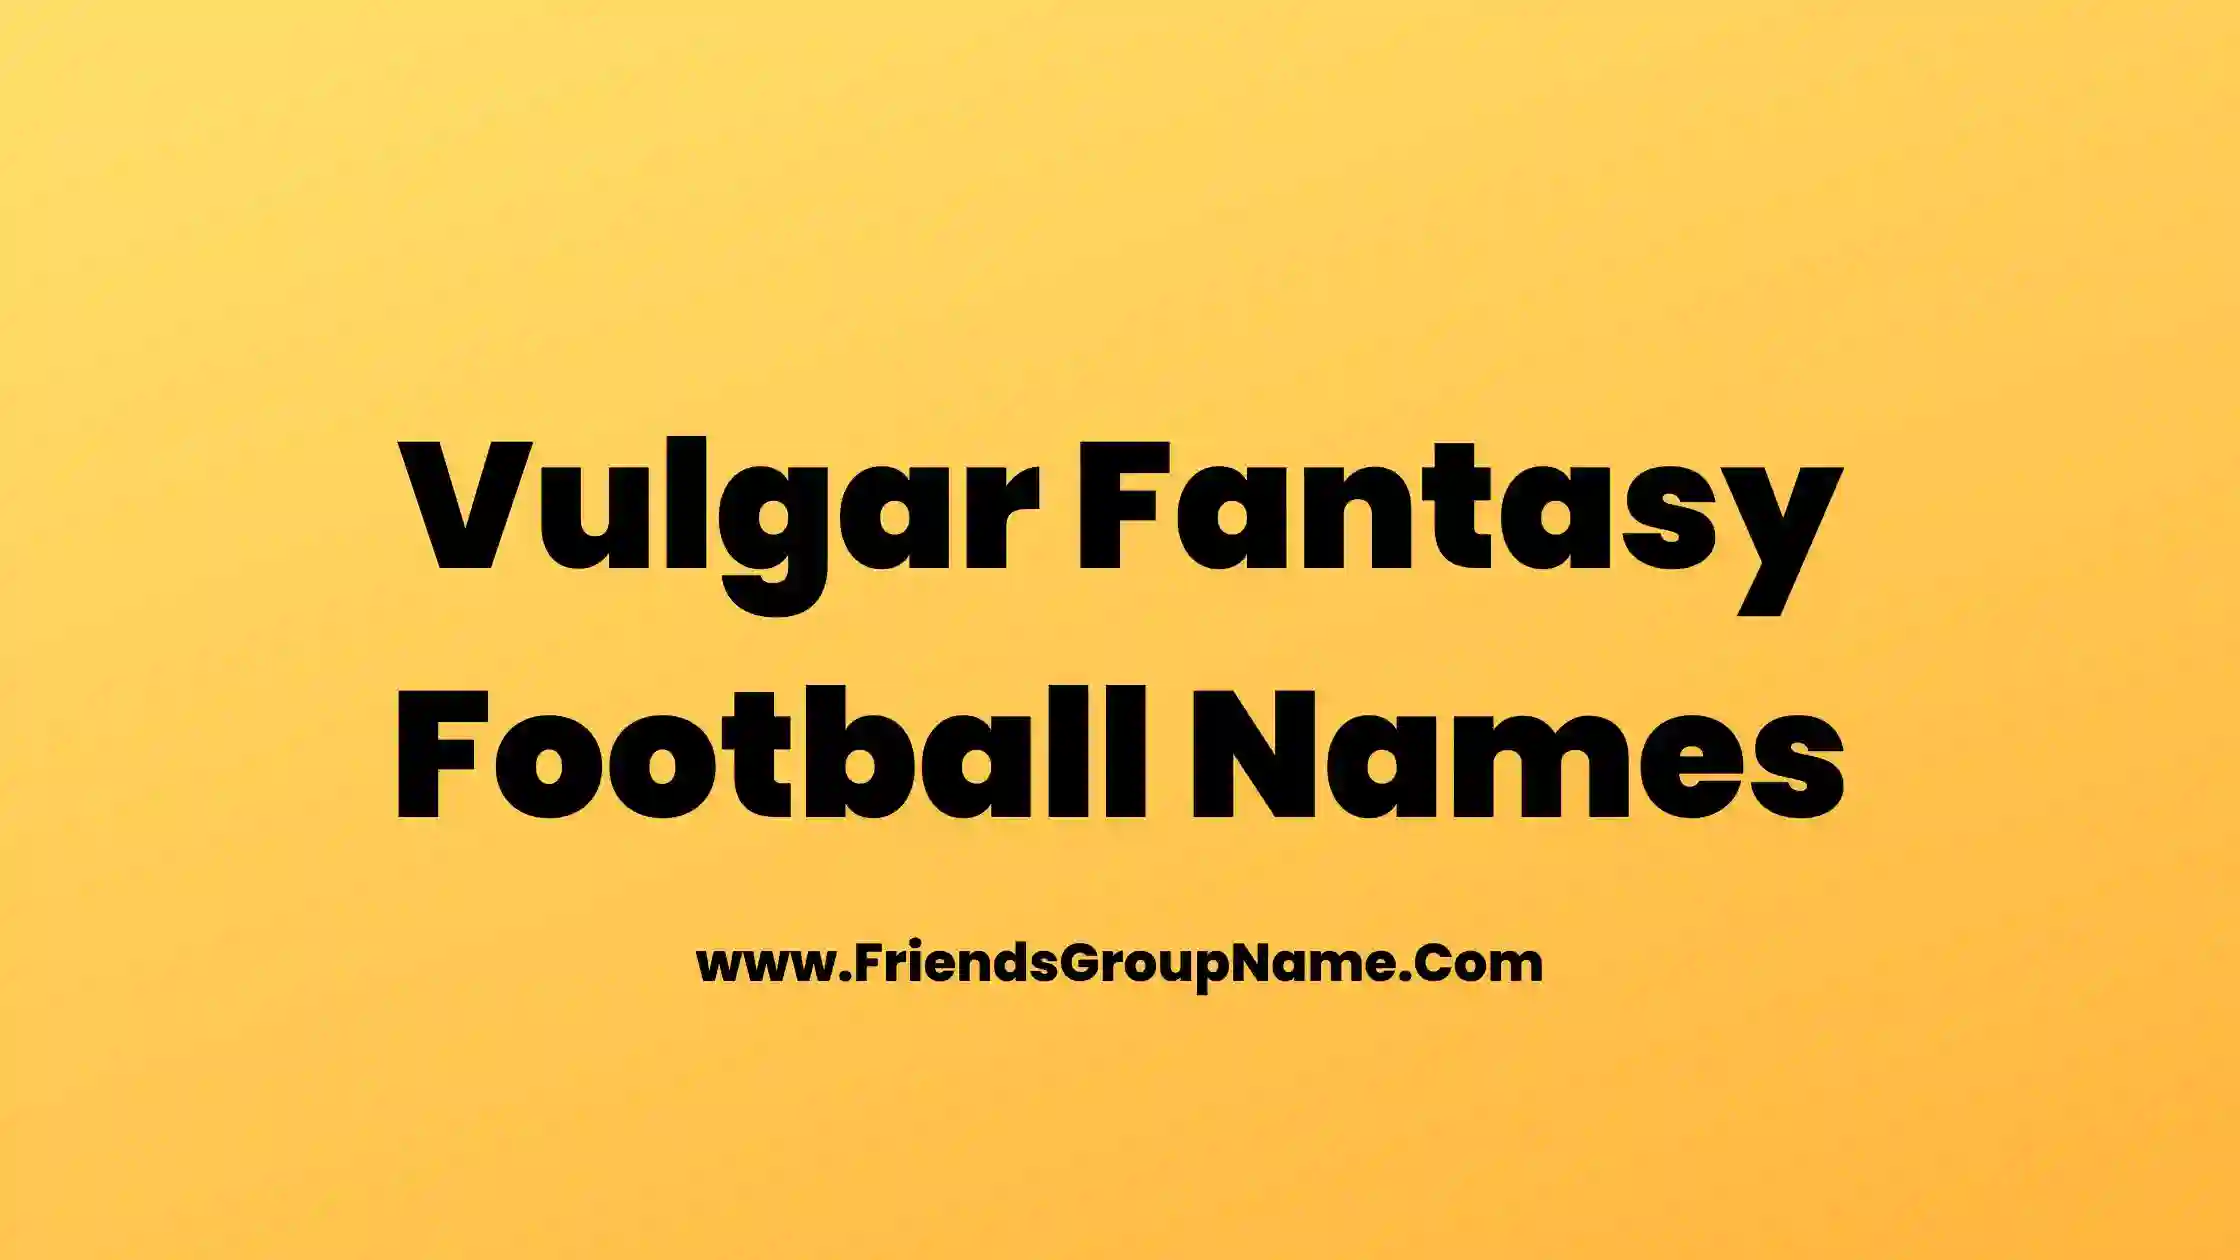 Vulgar Fantasy Football Names